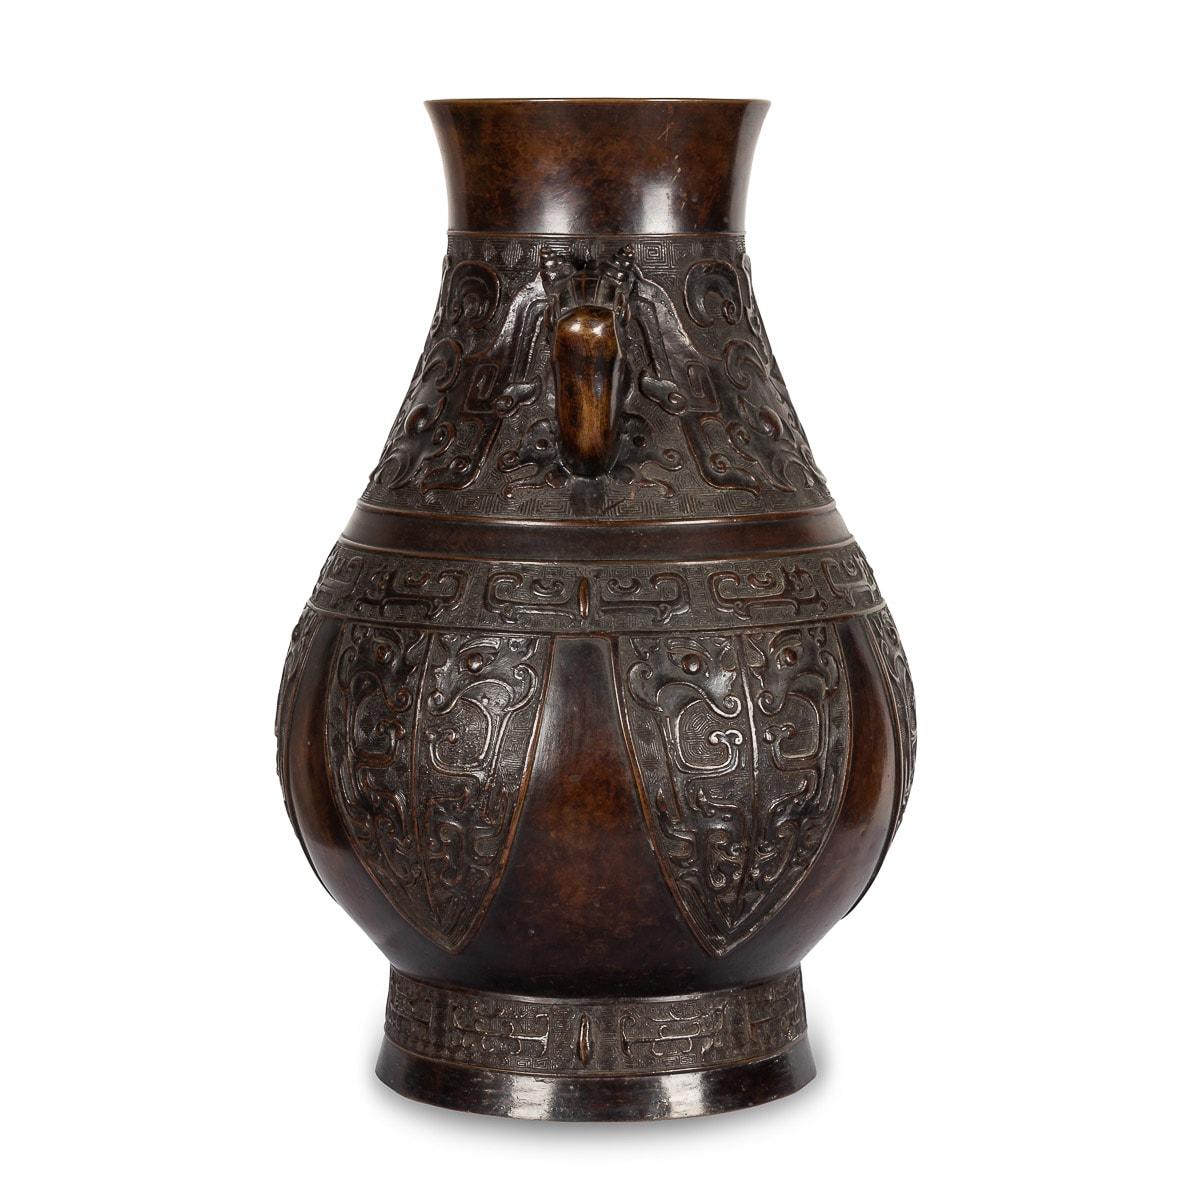 Vase chinois ancien du XIXe siècle en bronze, le corps en forme de poire reposant sur un pied étalé, le col cintré flanqué d'une paire d'anses en boucle provenant de têtes de dragon, coulé en bas-relief à l'extérieur avec deux larges bandes